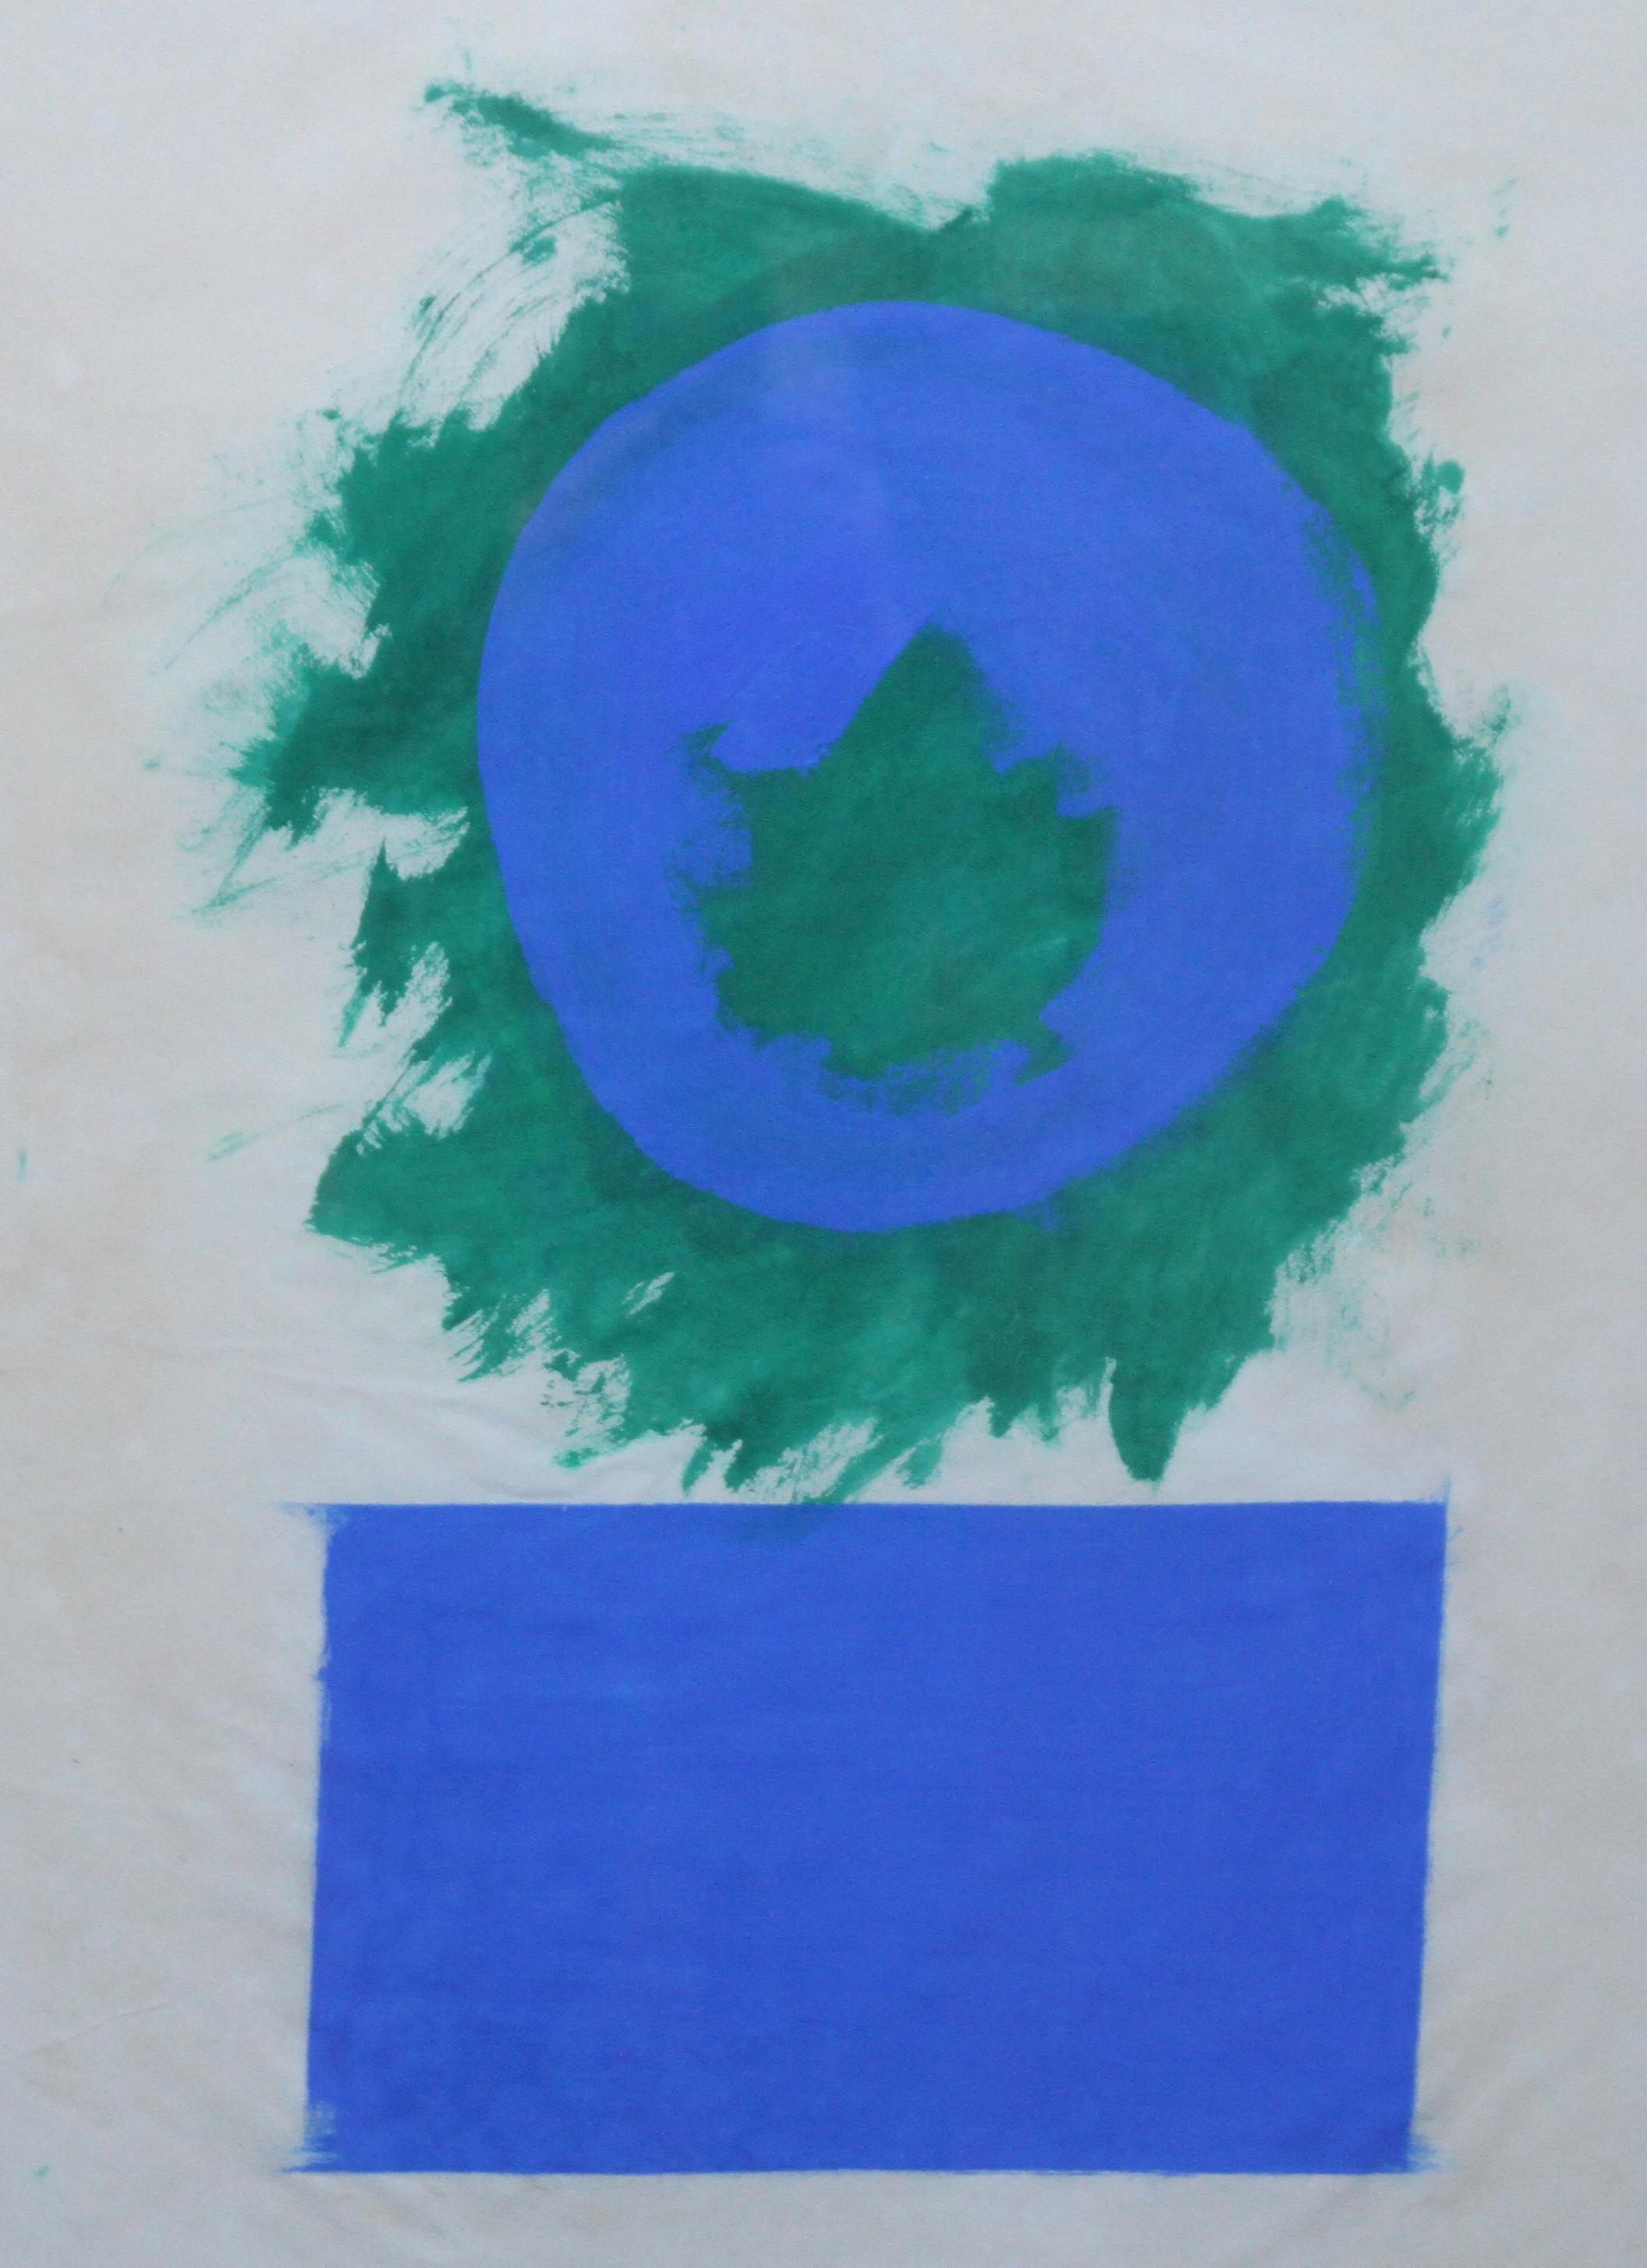 Formes bleues et vertes - Art abstrait britannique des années 50 - Peinture à l'huile sur papier couleurfield - Abstrait Painting par Robyn Denny